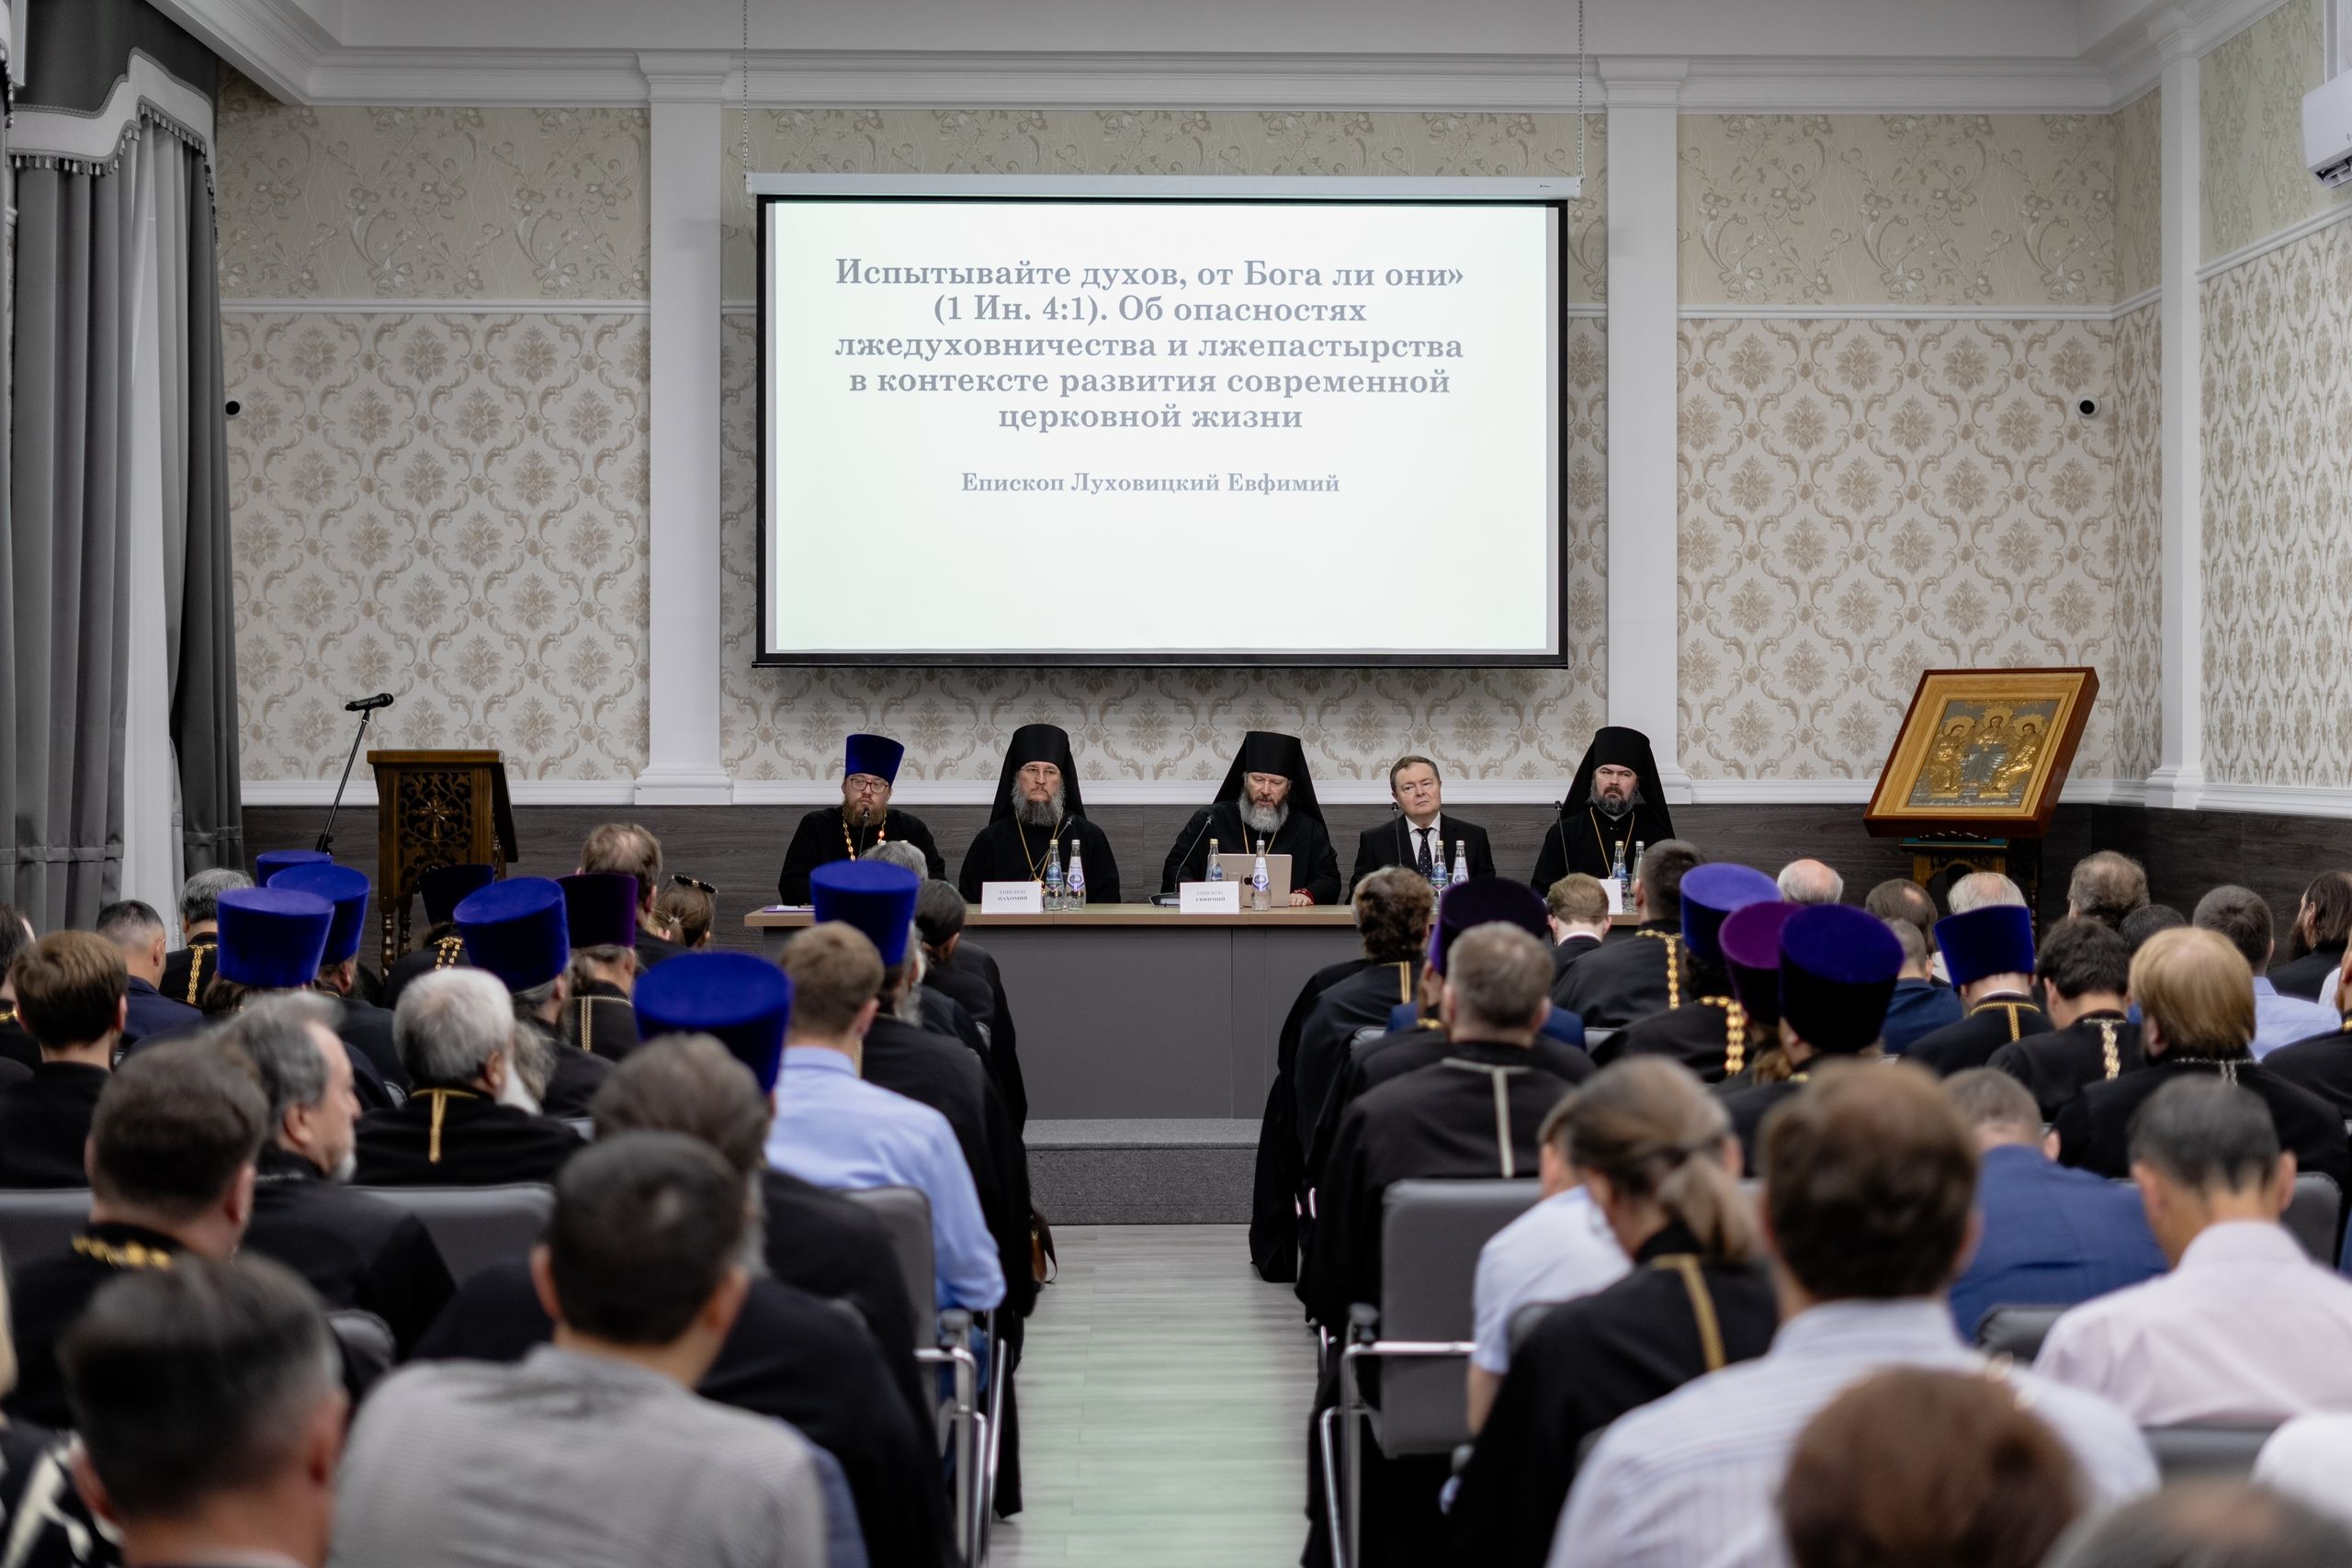 В Казани открылась научно-практическая конференция «Духовничество и псевдостарчество»